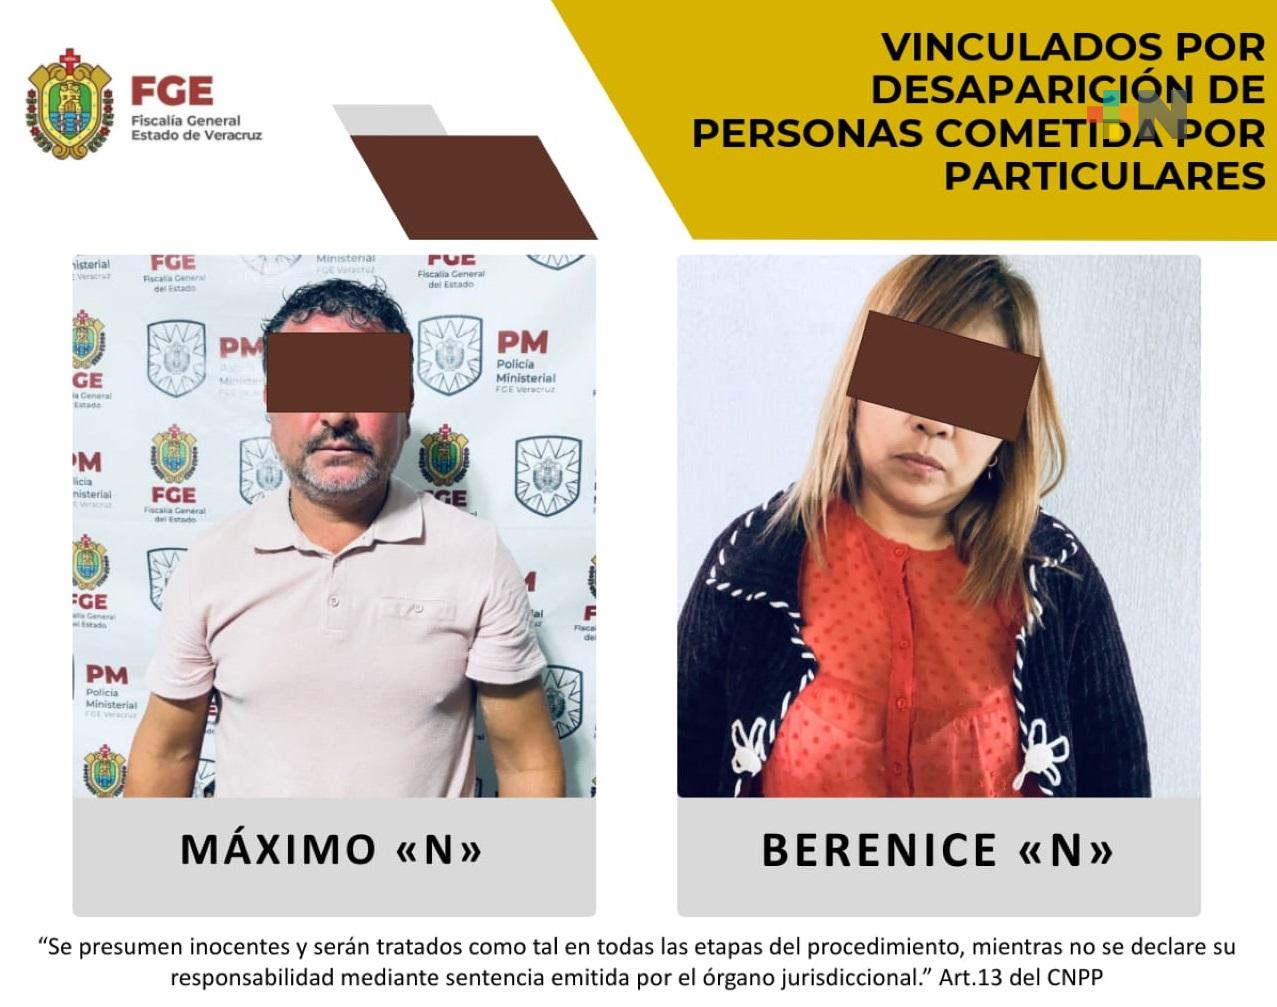 Berenice del Carmen «N» y Máximo «N»,  vinculados por desaparición de personas